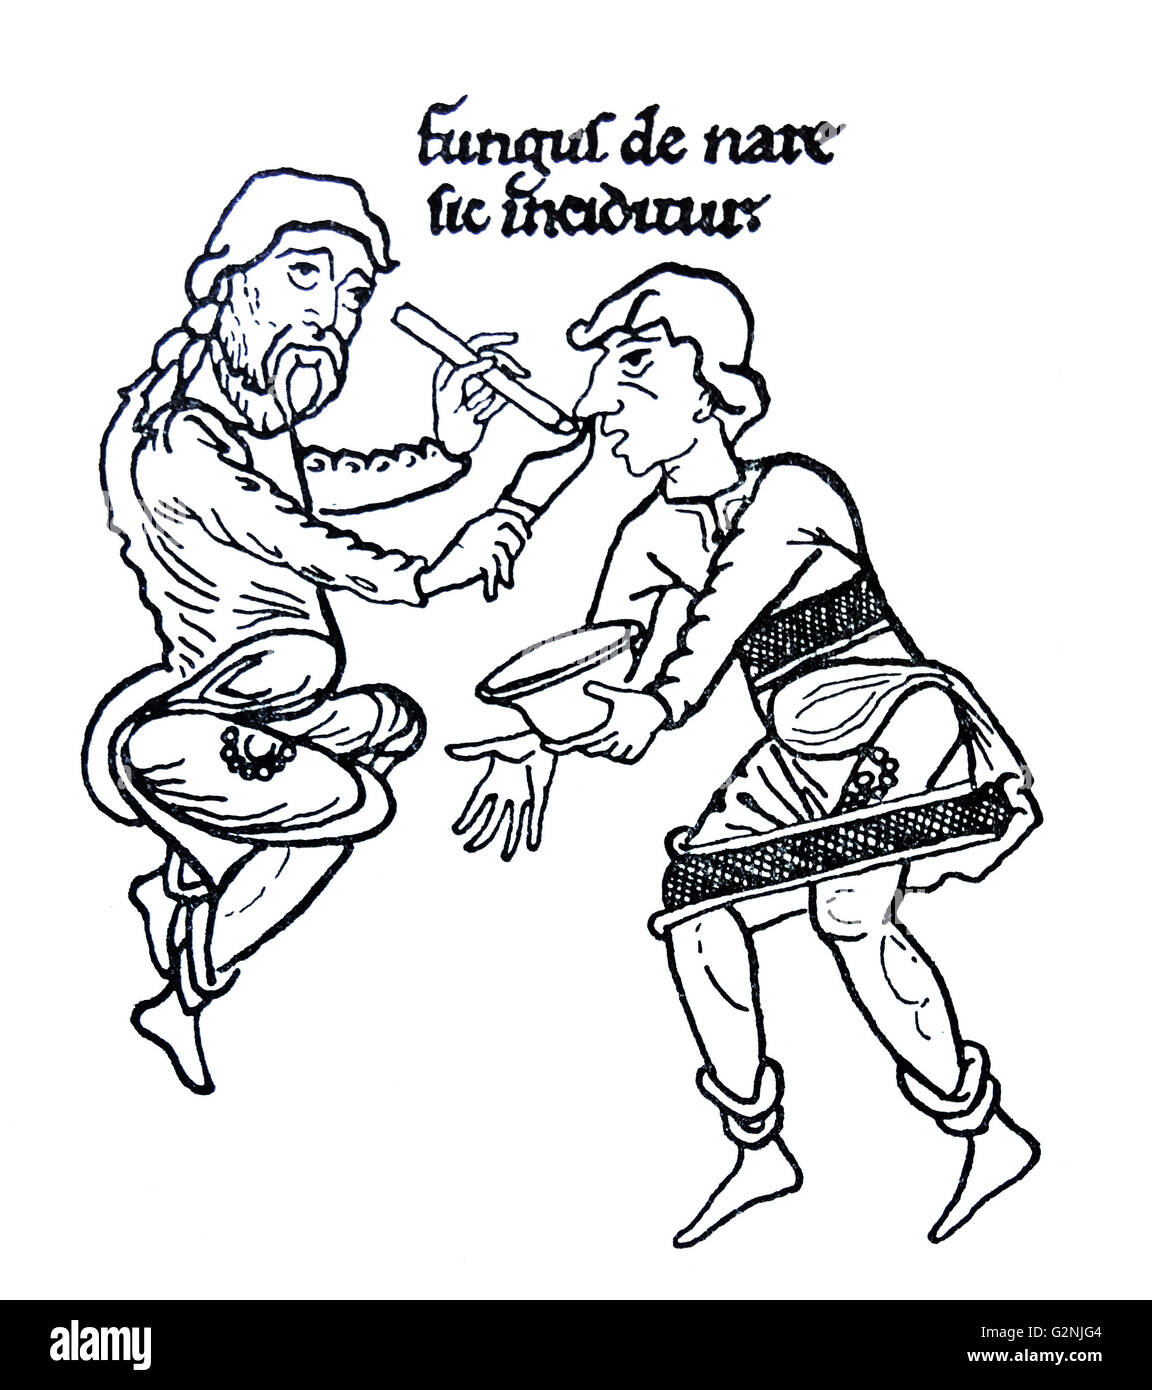 Dimensions de la cité médiévale d'un traitement par voie nasale de l'affliction. Le texte ci-dessus est "Champignon de sic nase inciditur" qui se traduit par 'polypus est donc coupé de l'nez'. En date du 12e siècle Banque D'Images